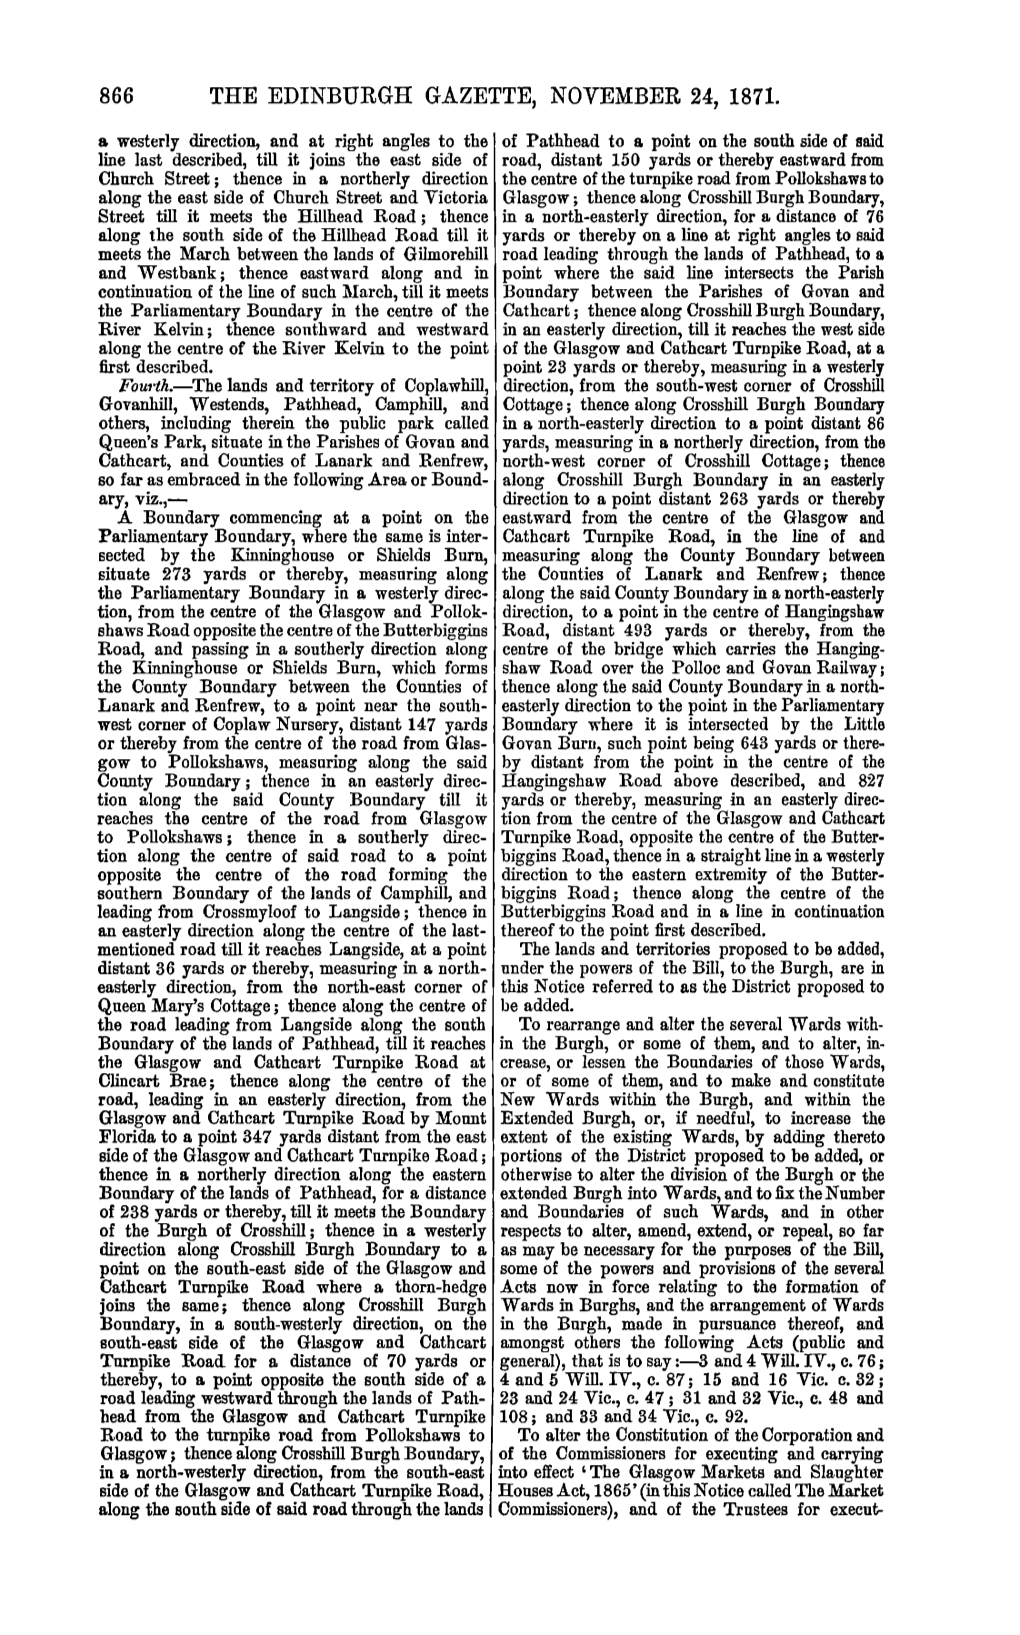 The Edinburgh Gazette, November 24, 1871